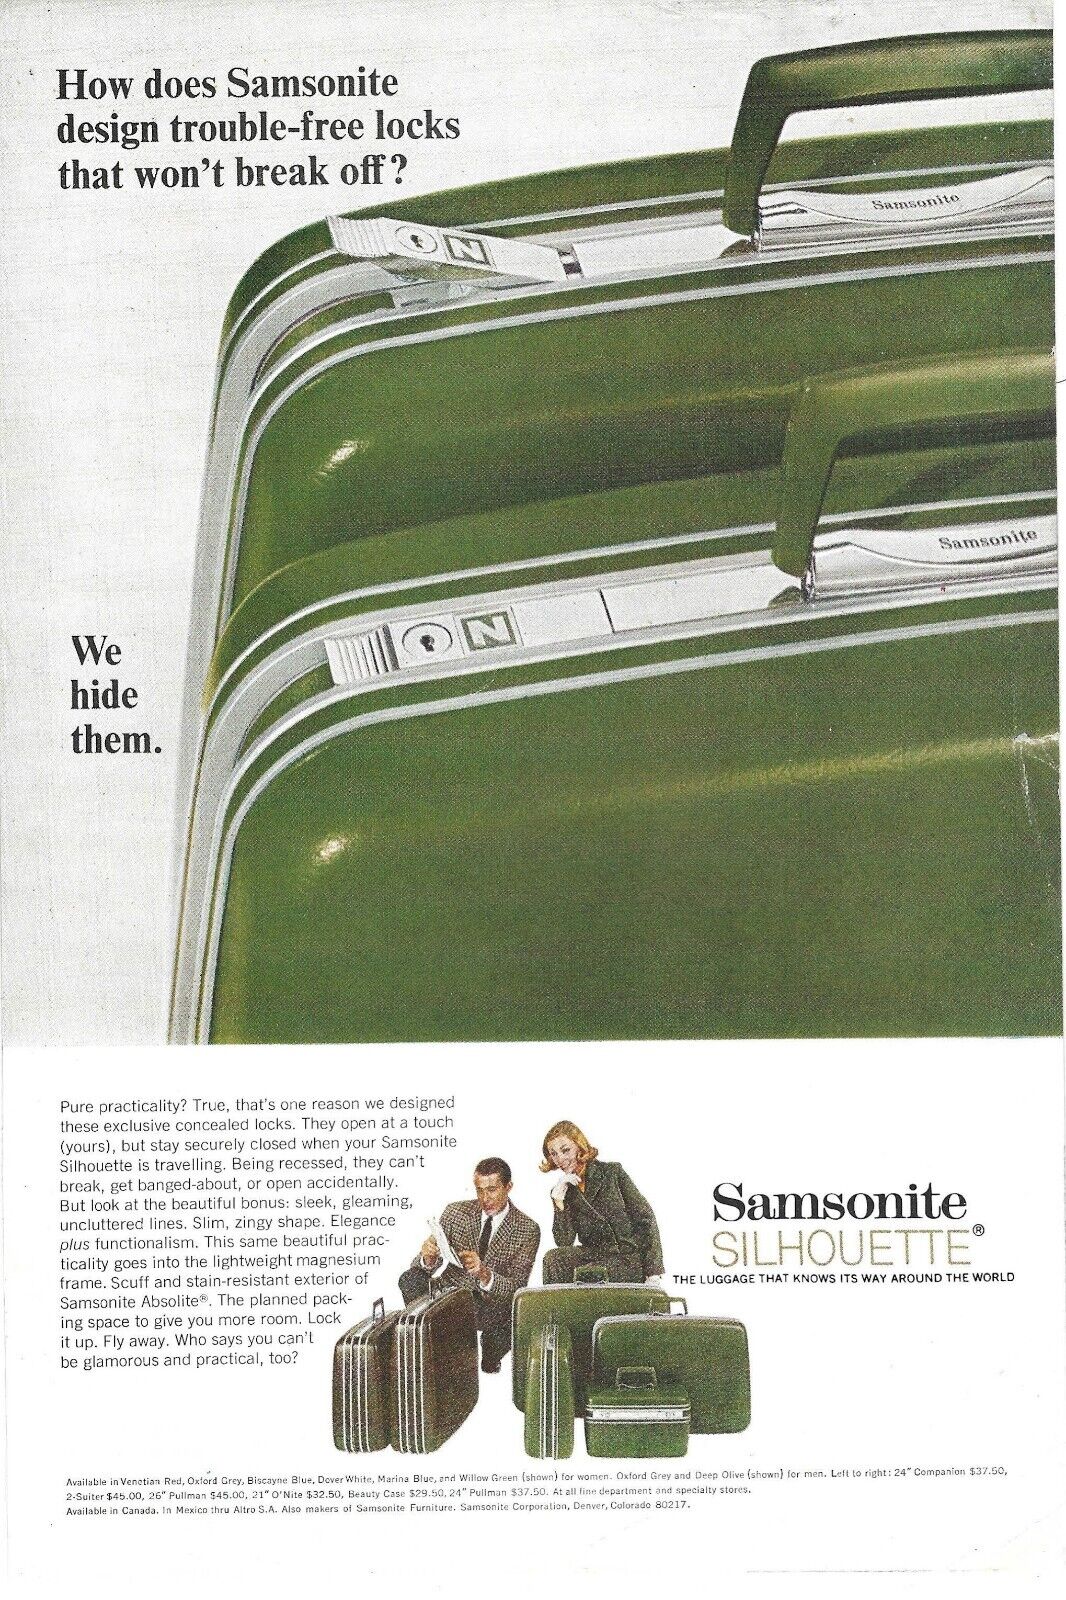 1967 Samsonite Silhouette Luggage Vintage Color Print Ad Ephemera